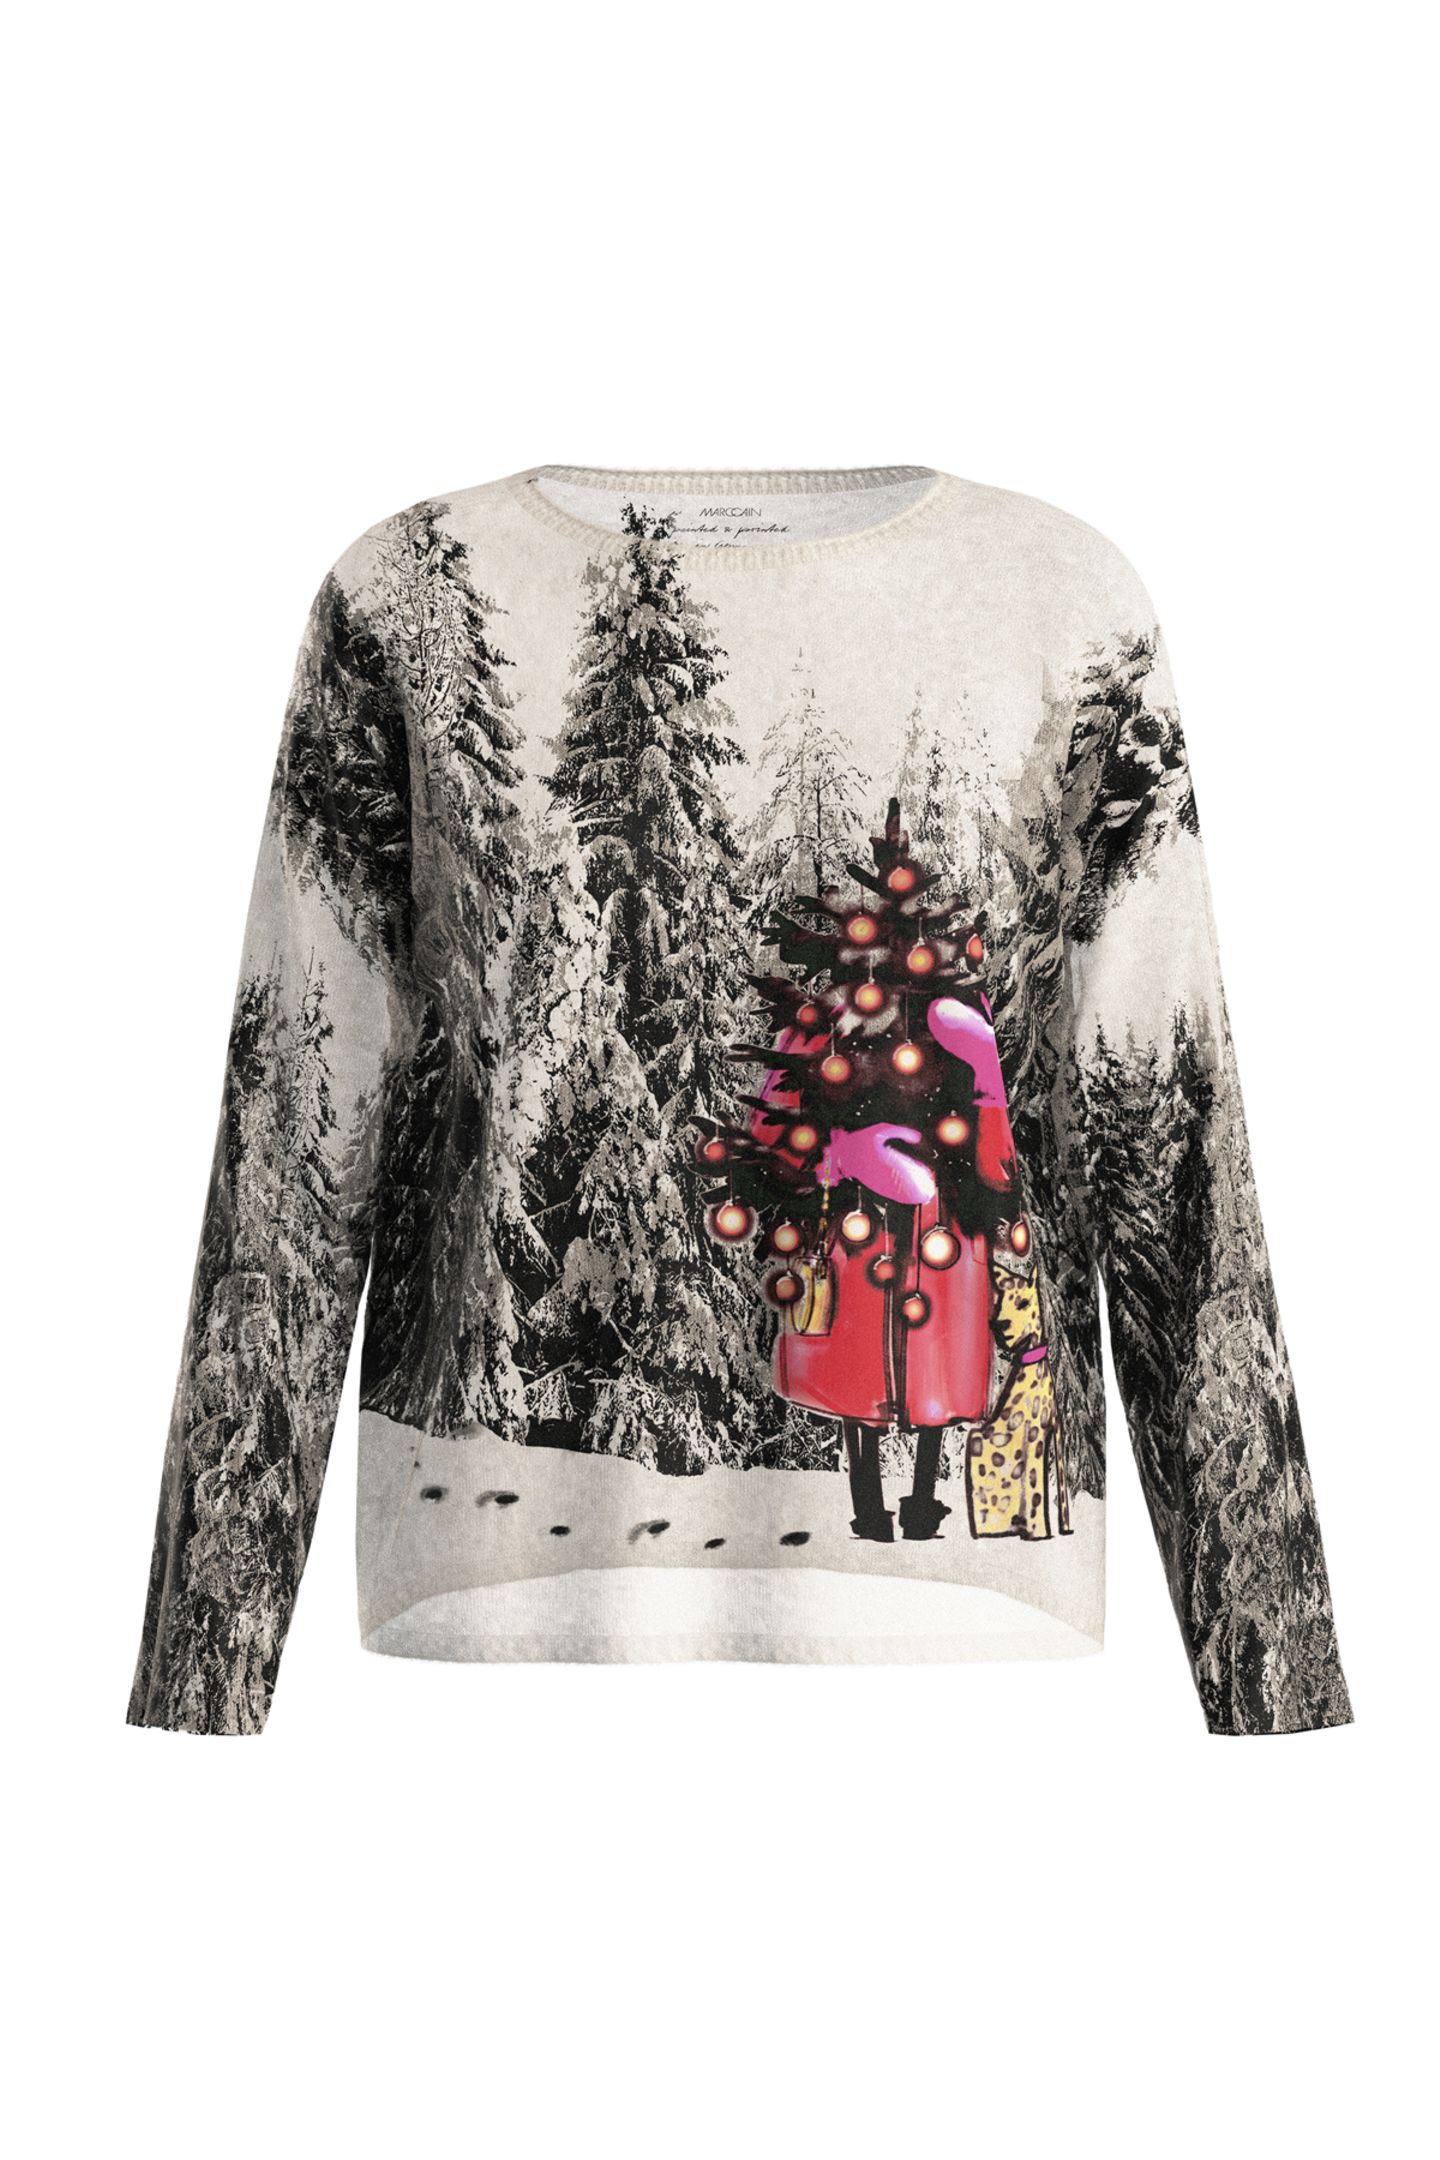 Für alle, die Weihnachtspullover und das Besondere lieben! Dieses Modell ist eine elegante Variante eines Christmas Sweaters. Der Pullover mit Tannen-Motiv ist 100 Prozent Made in Germany und wird aus einem Alpakamix gestrickt. Von Marc Cain, ca. 299 Euro. 